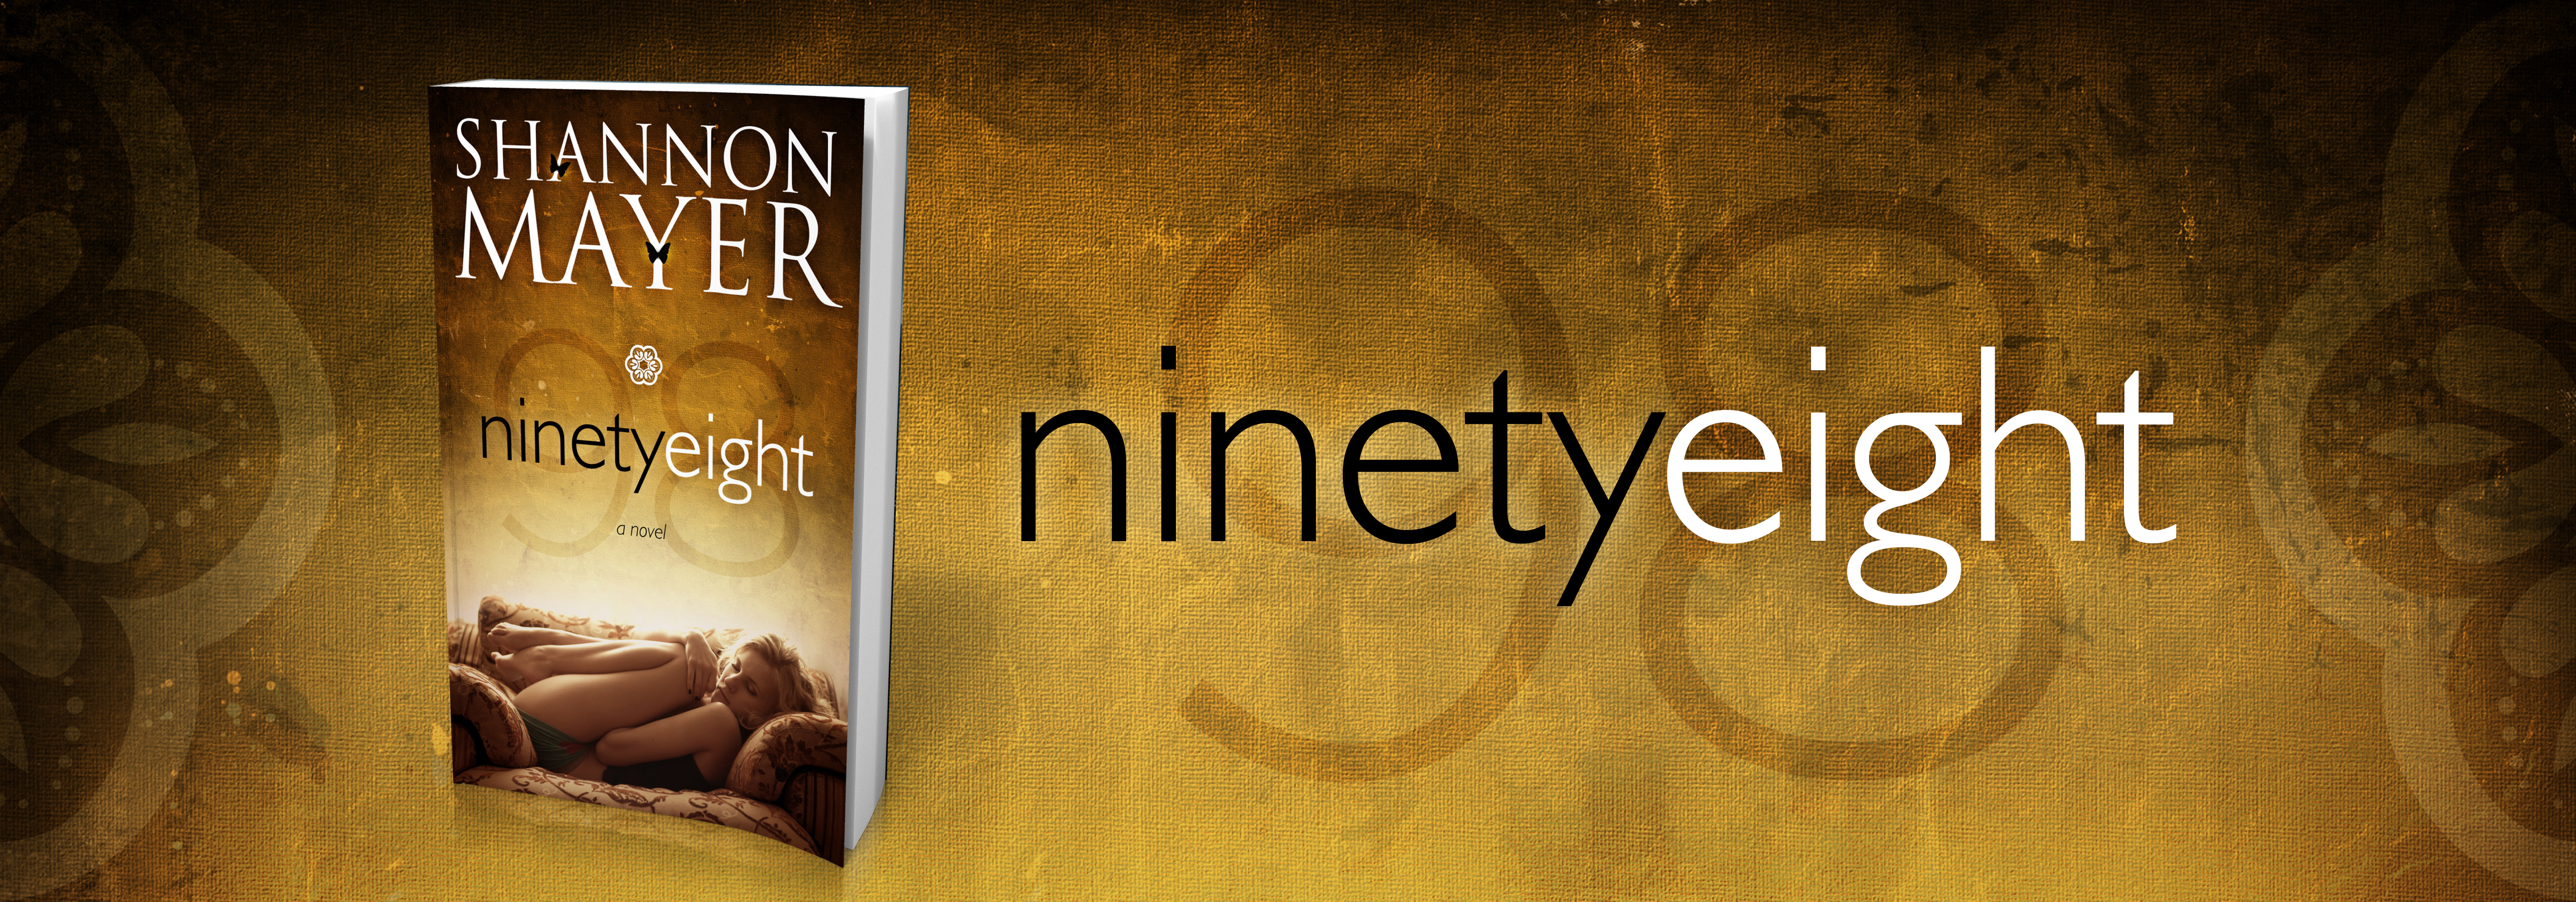 nienty eight banner